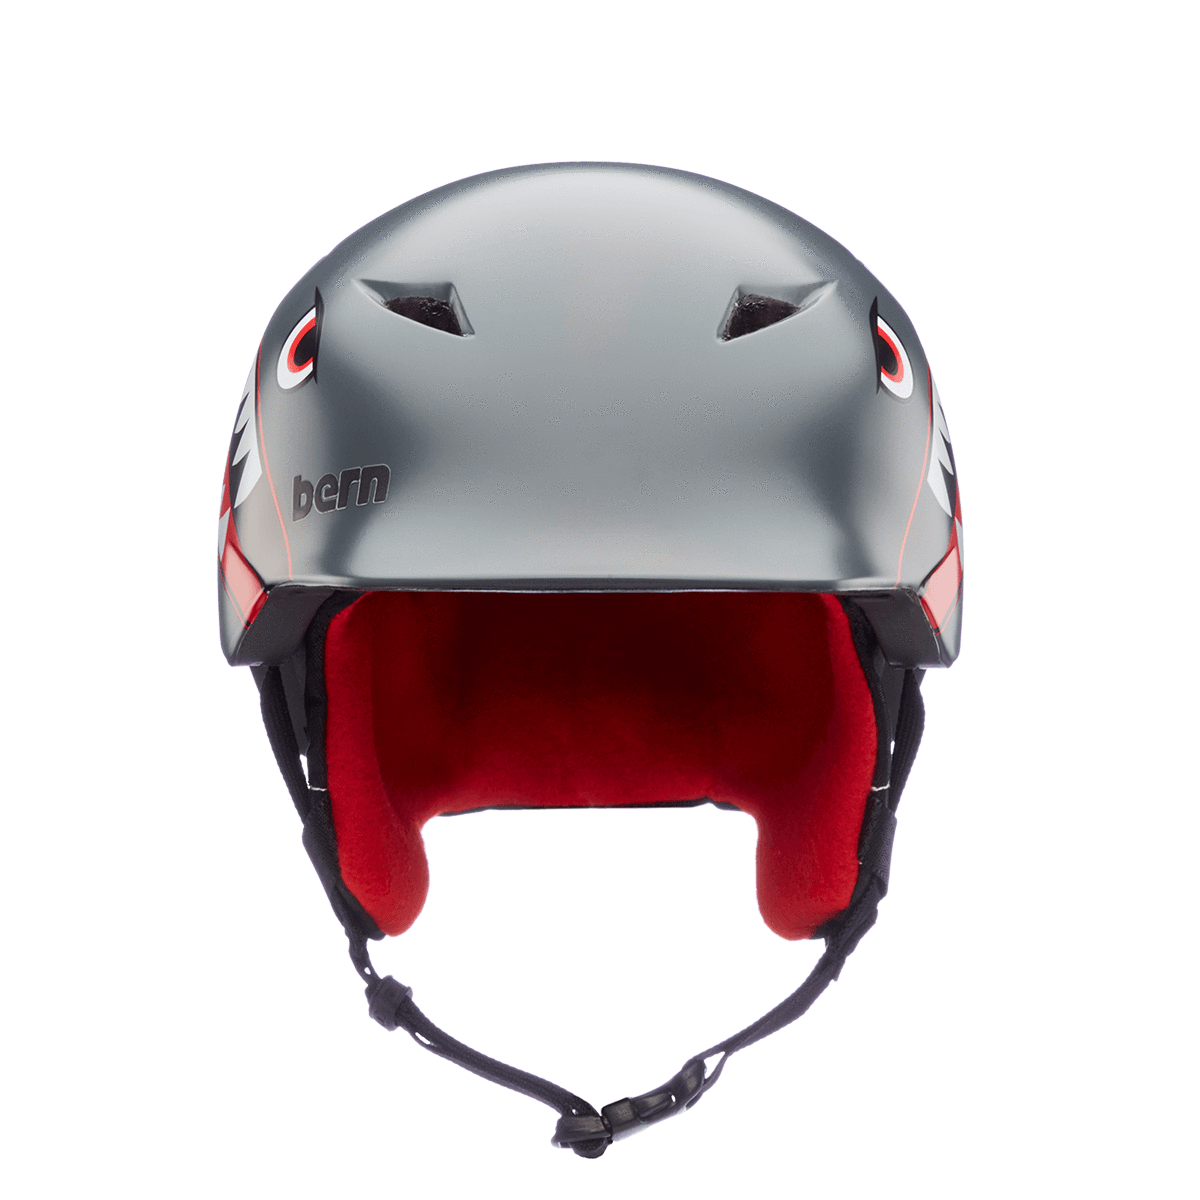 Bern Camino Kid's Helmet - 88 Gear